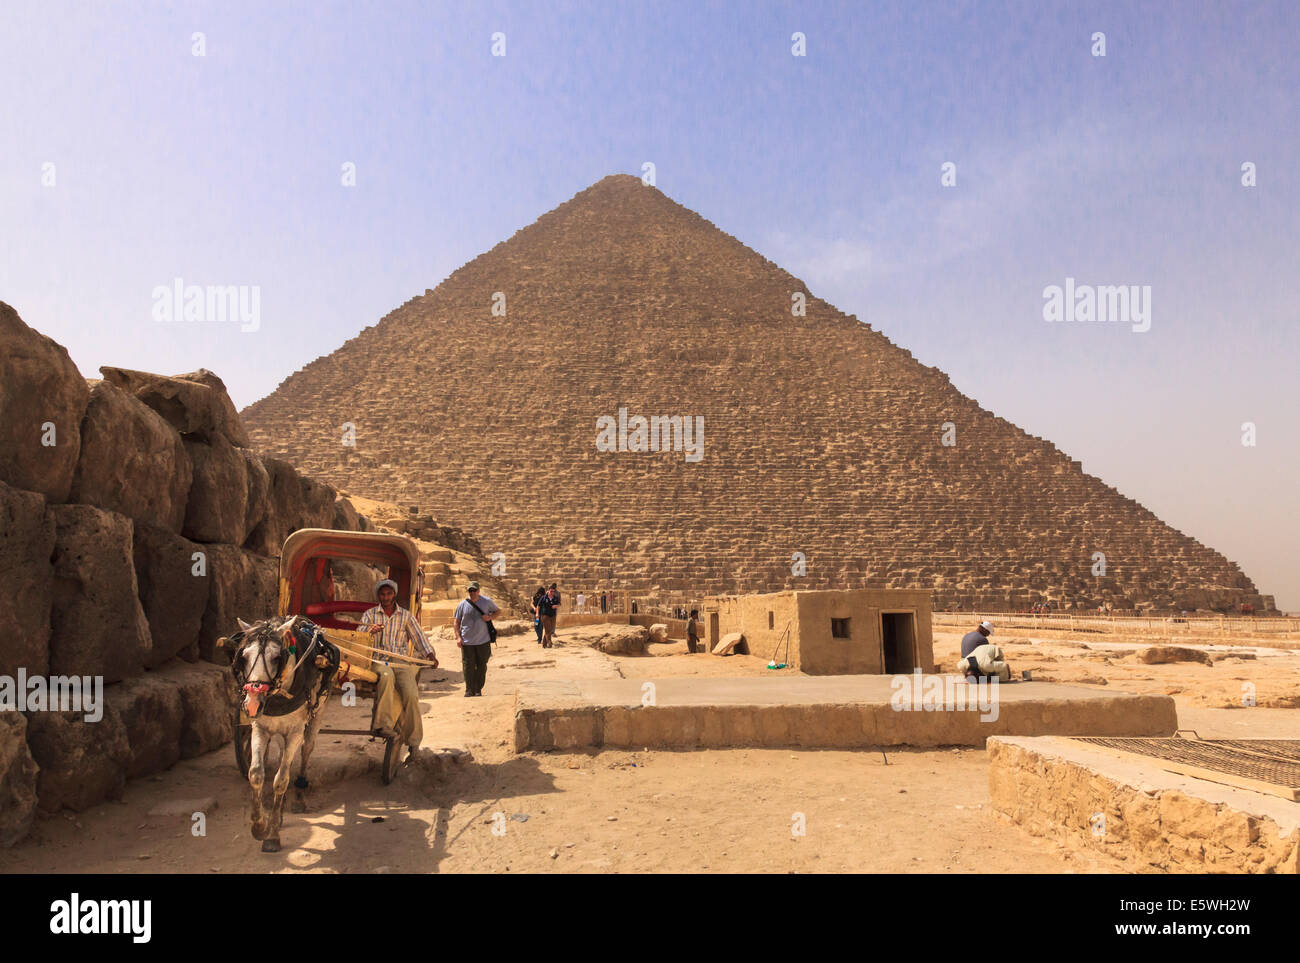 Grande Piramide di Giza in Egitto - Piramidi di Giza, con il cavallo e la spesa in attesa per i turisti Foto Stock